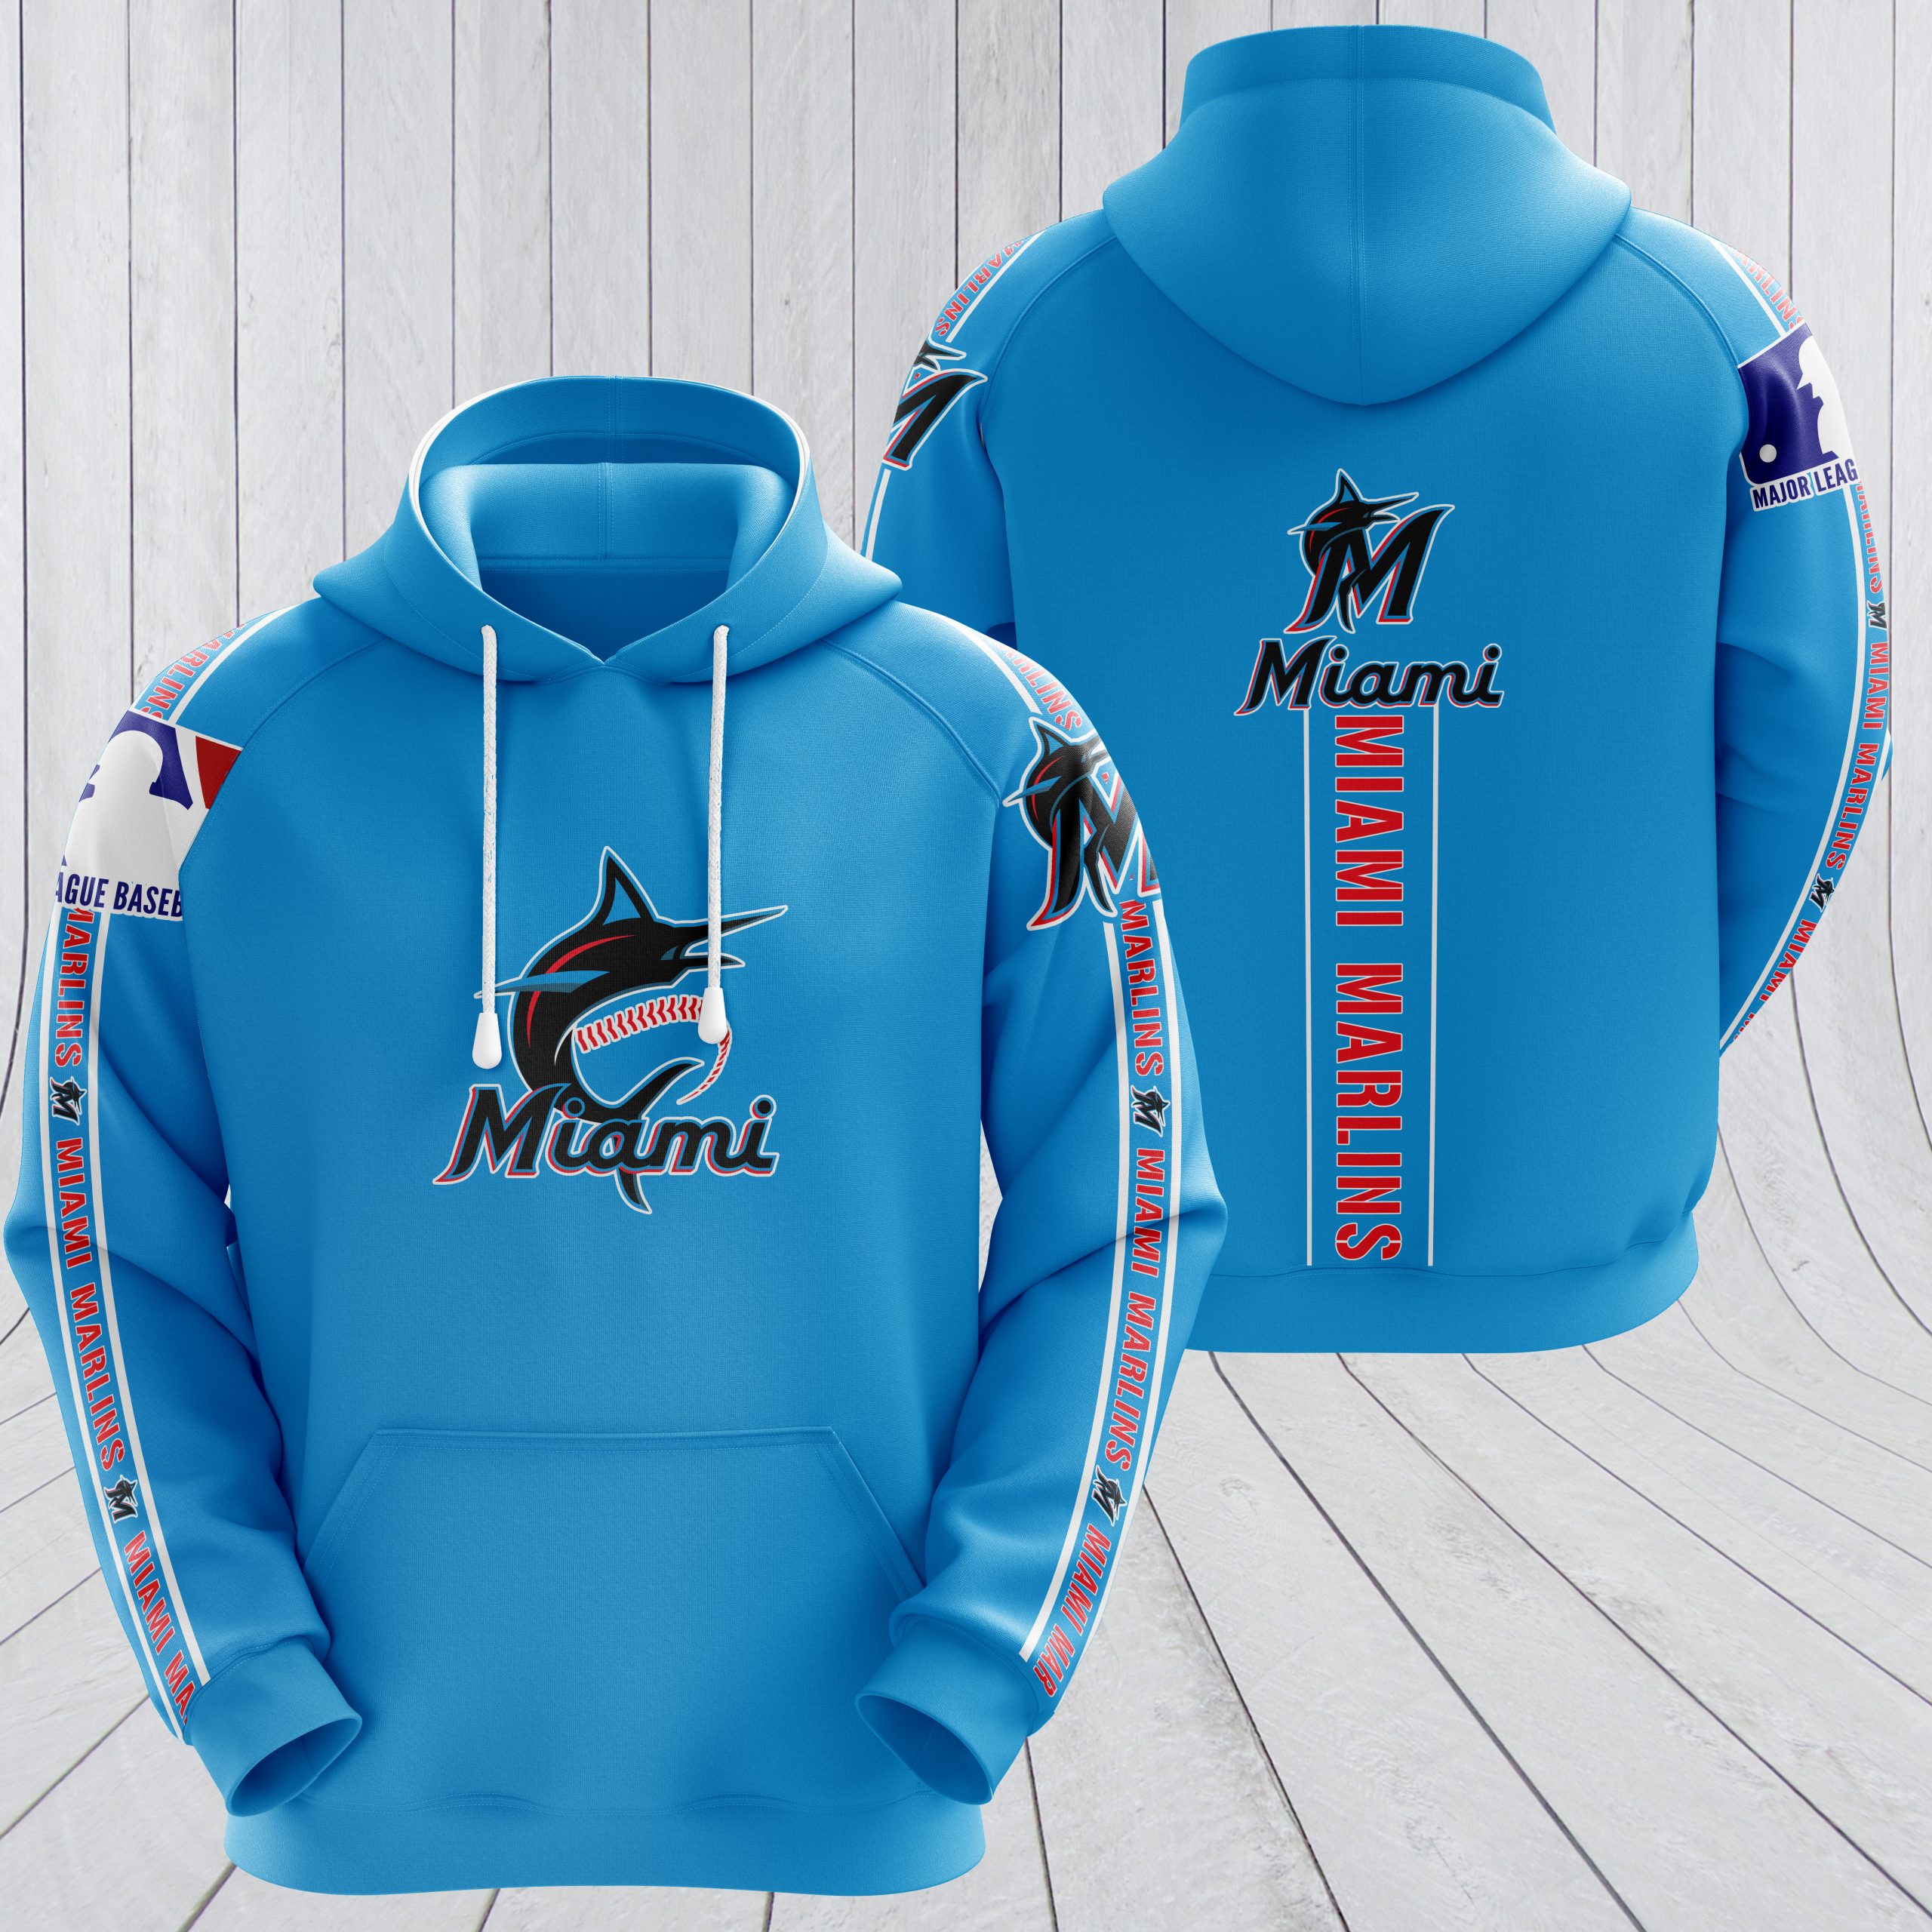 MLB miami marlins full printing hoodie - teal